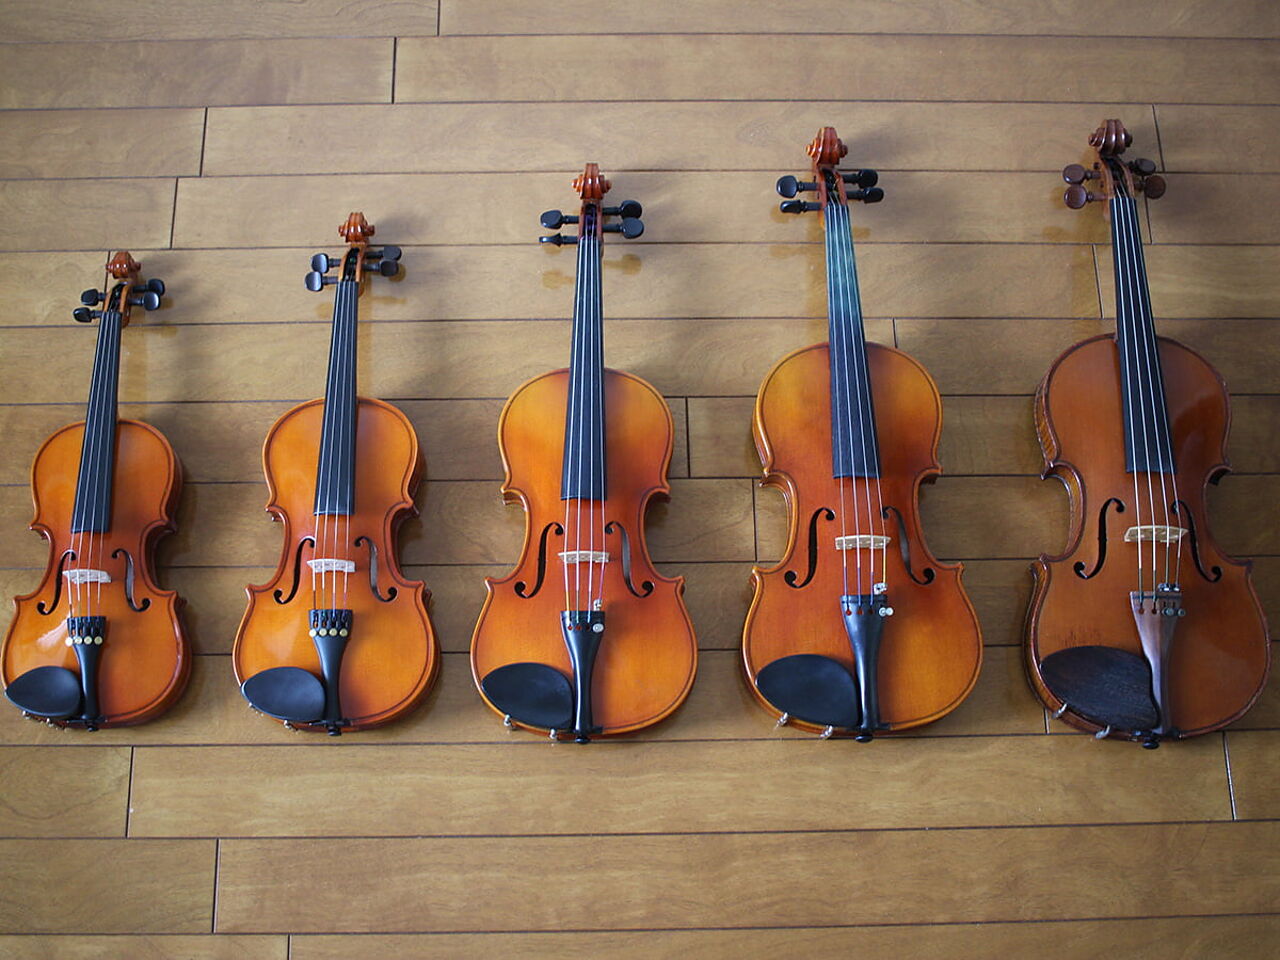 床にバイオリンが並んでいる画像